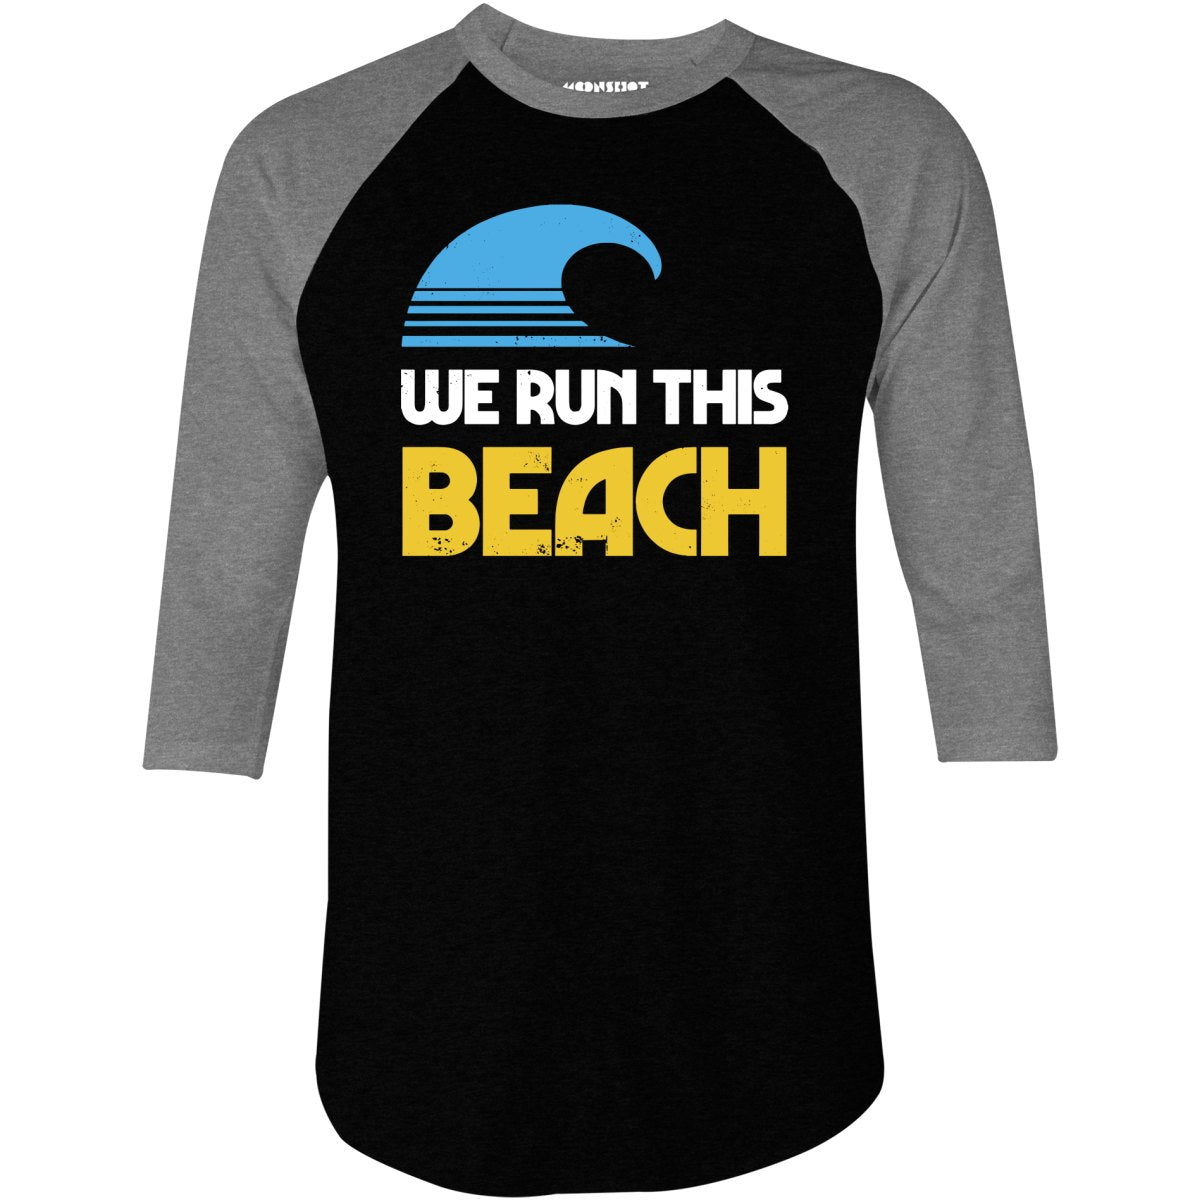 We Run This Beach - 3/4 Sleeve Raglan T-Shirt